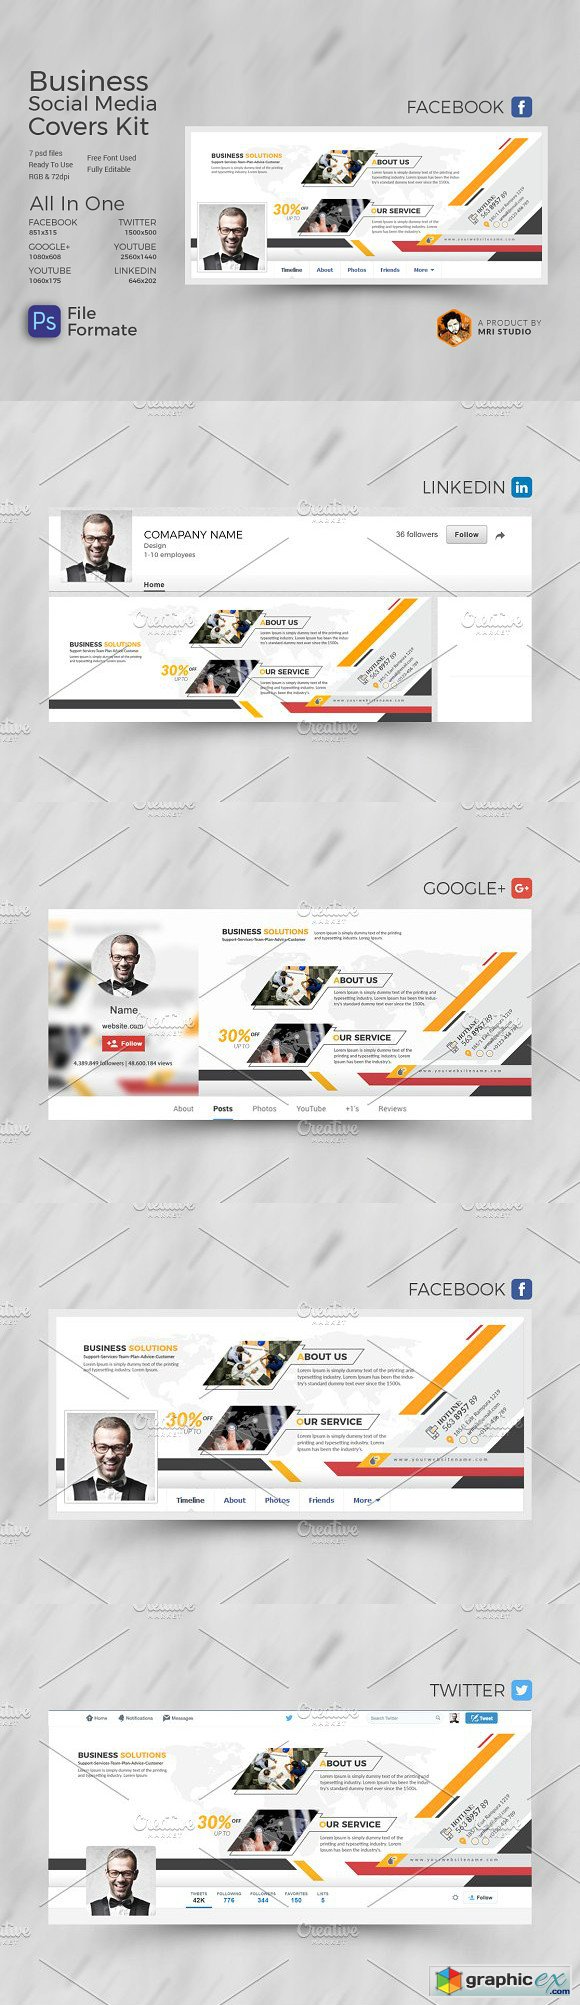 Business Social Media Cover kit